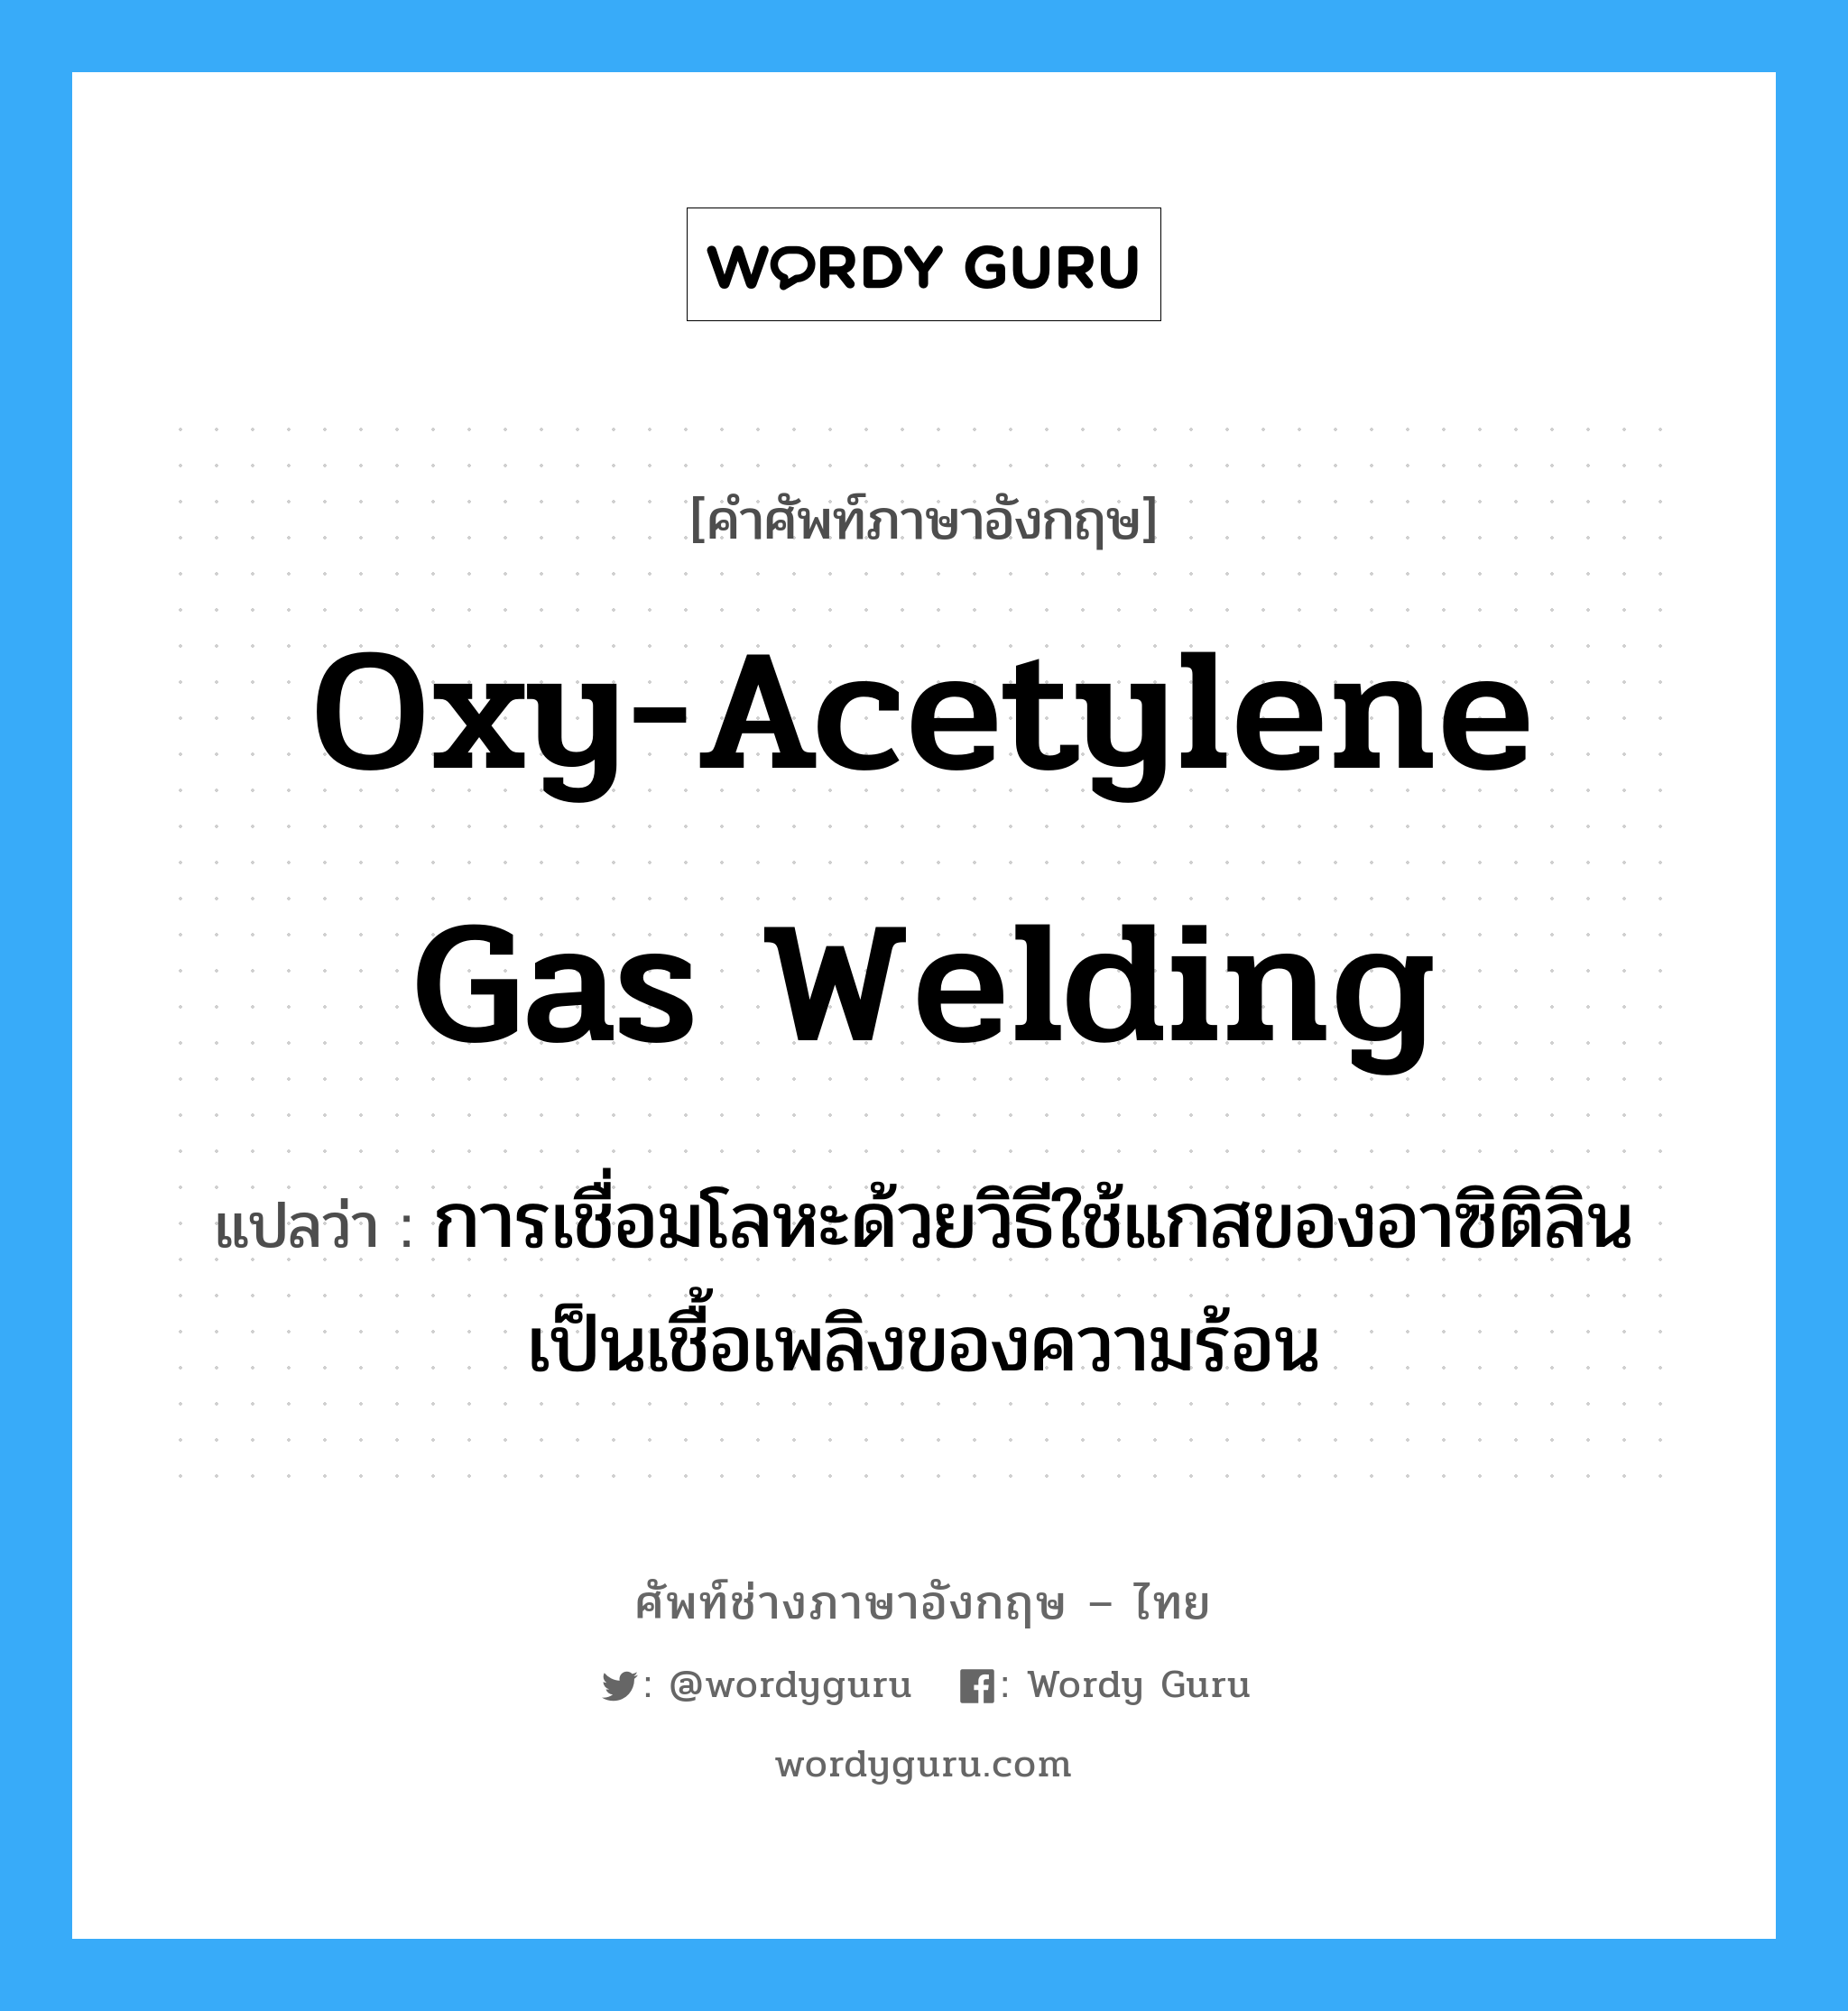 oxy-acetylene gas welding แปลว่า?, คำศัพท์ช่างภาษาอังกฤษ - ไทย oxy-acetylene gas welding คำศัพท์ภาษาอังกฤษ oxy-acetylene gas welding แปลว่า การเชื่อมโลหะด้วยวิธีใช้แกสของอาซิติลินเป็นเชื้อเพลิงของความร้อน